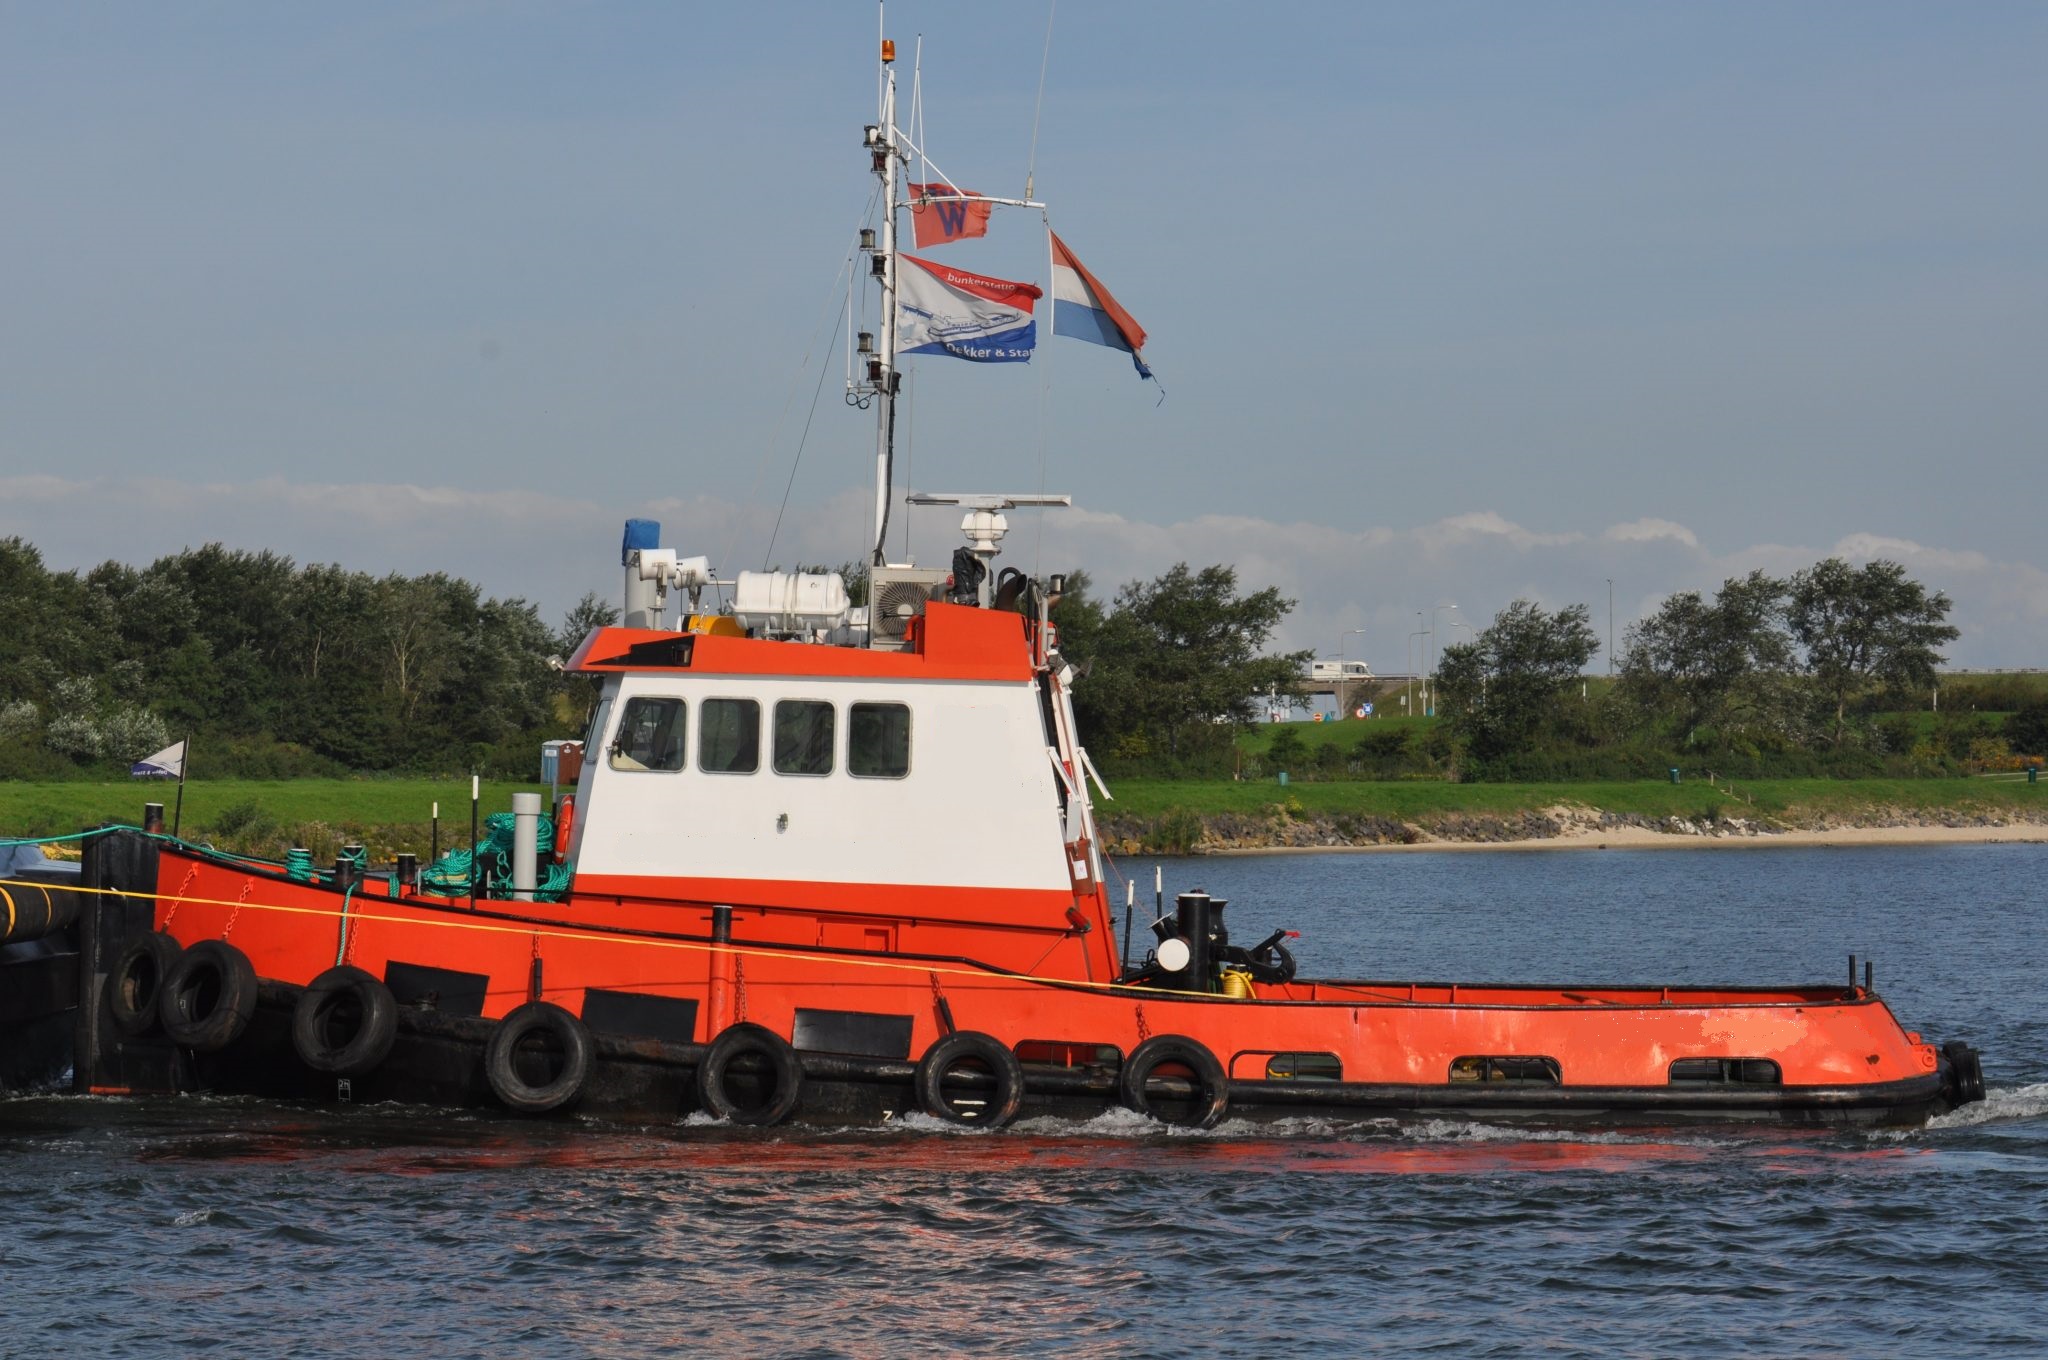 Twin screw heavy duty workboat, 10 tons bp